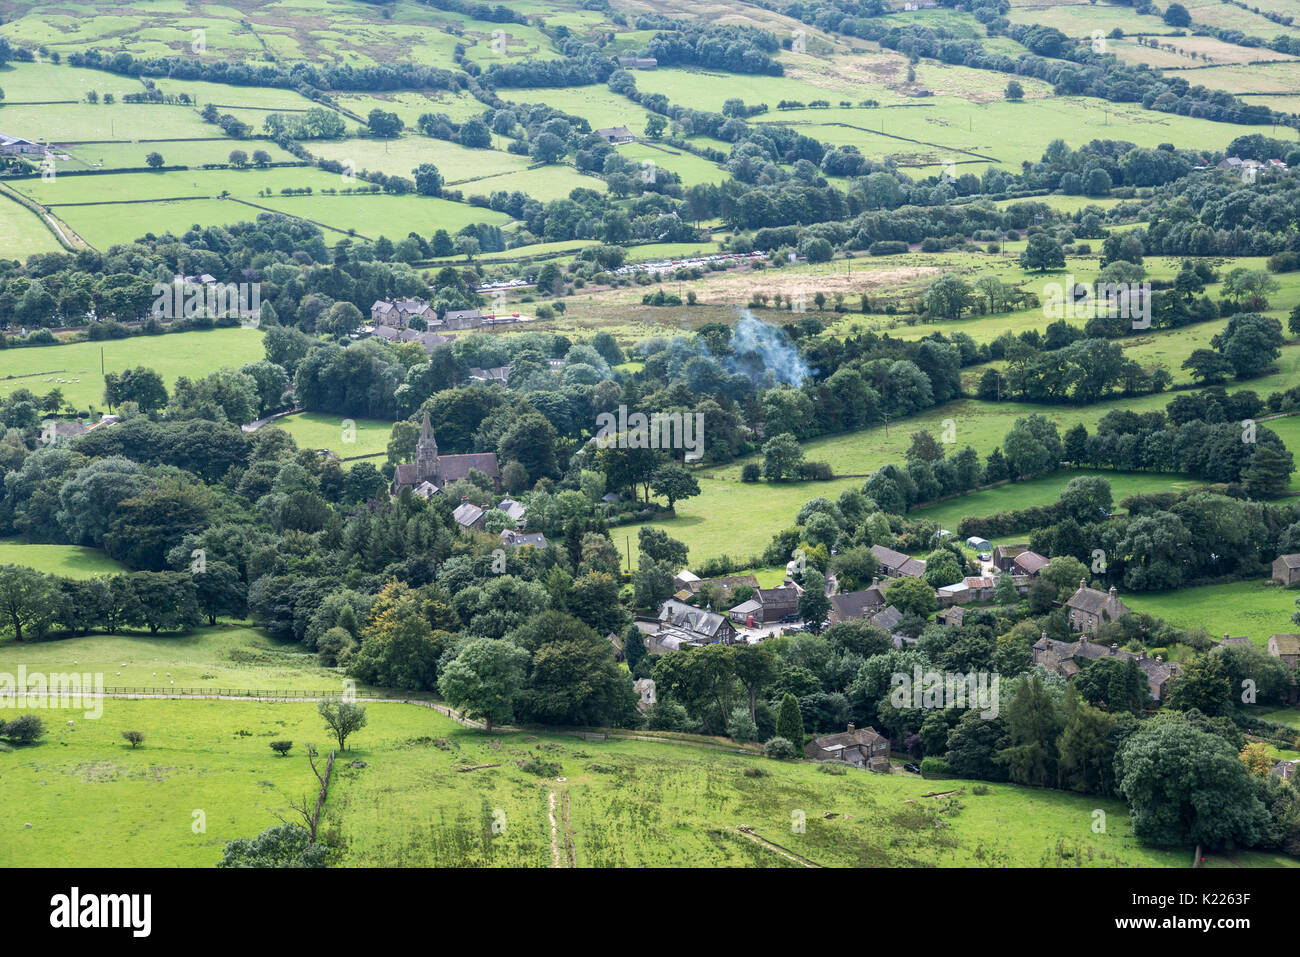 Das Dorf Edale im Sommer. Nationalpark Peak District, Derbyshire, England. Stockfoto